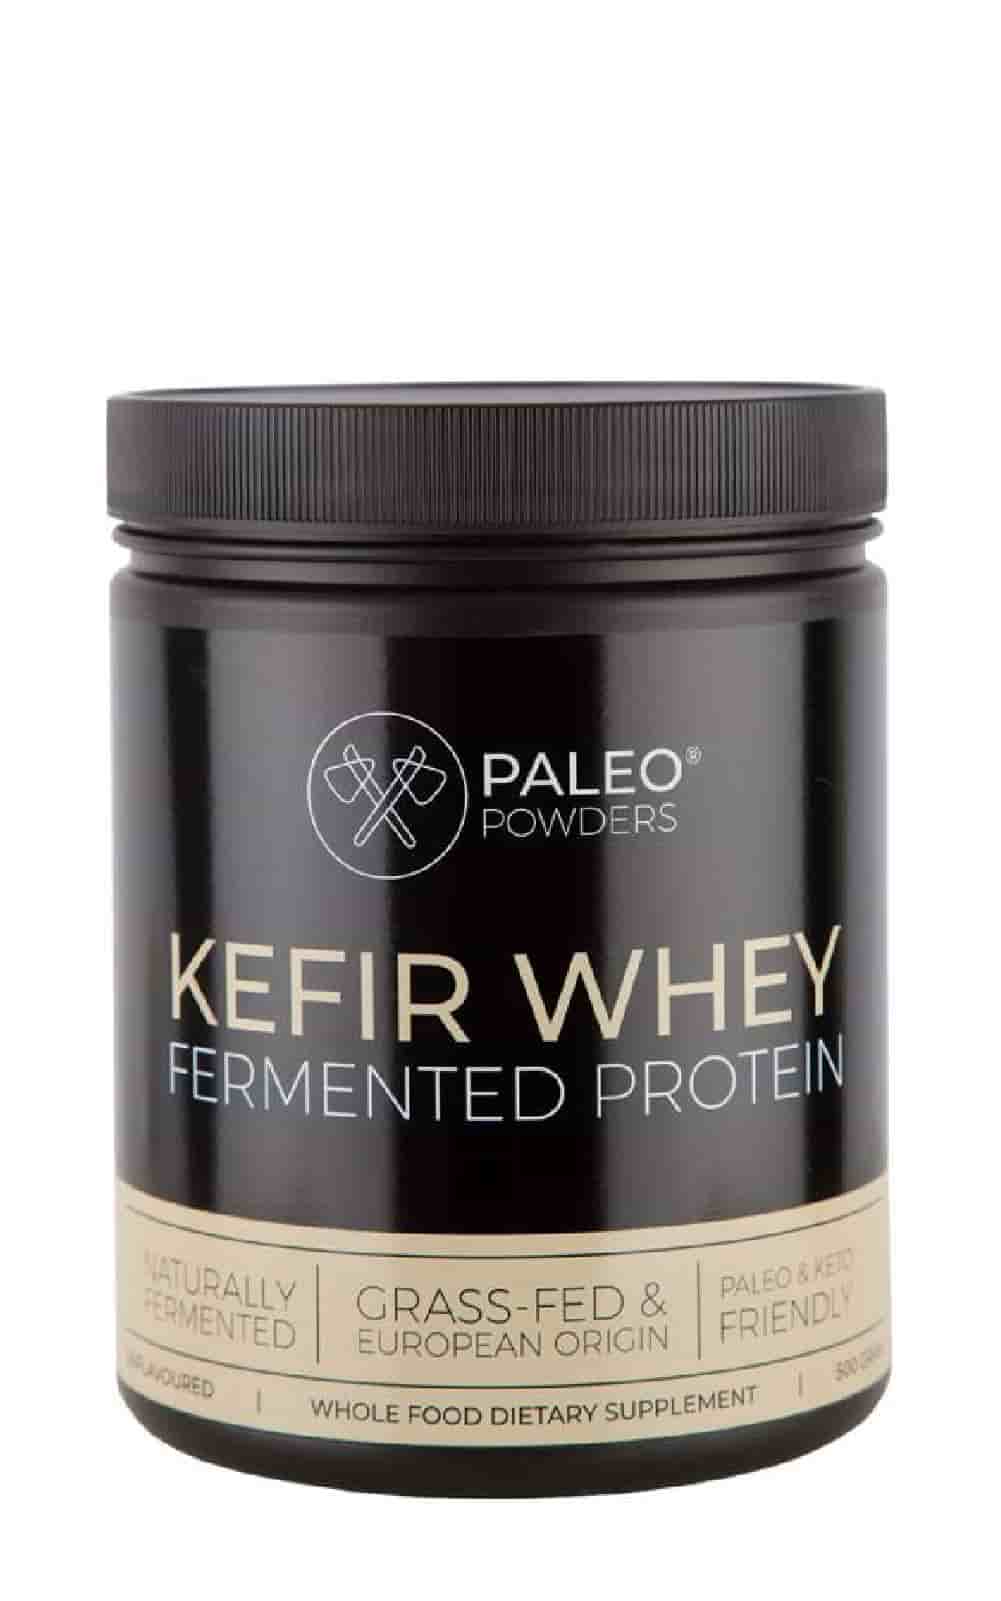 Paleo Powders Kefir Whey - Fermented Protein Powder bei LiveHelfi kaufen